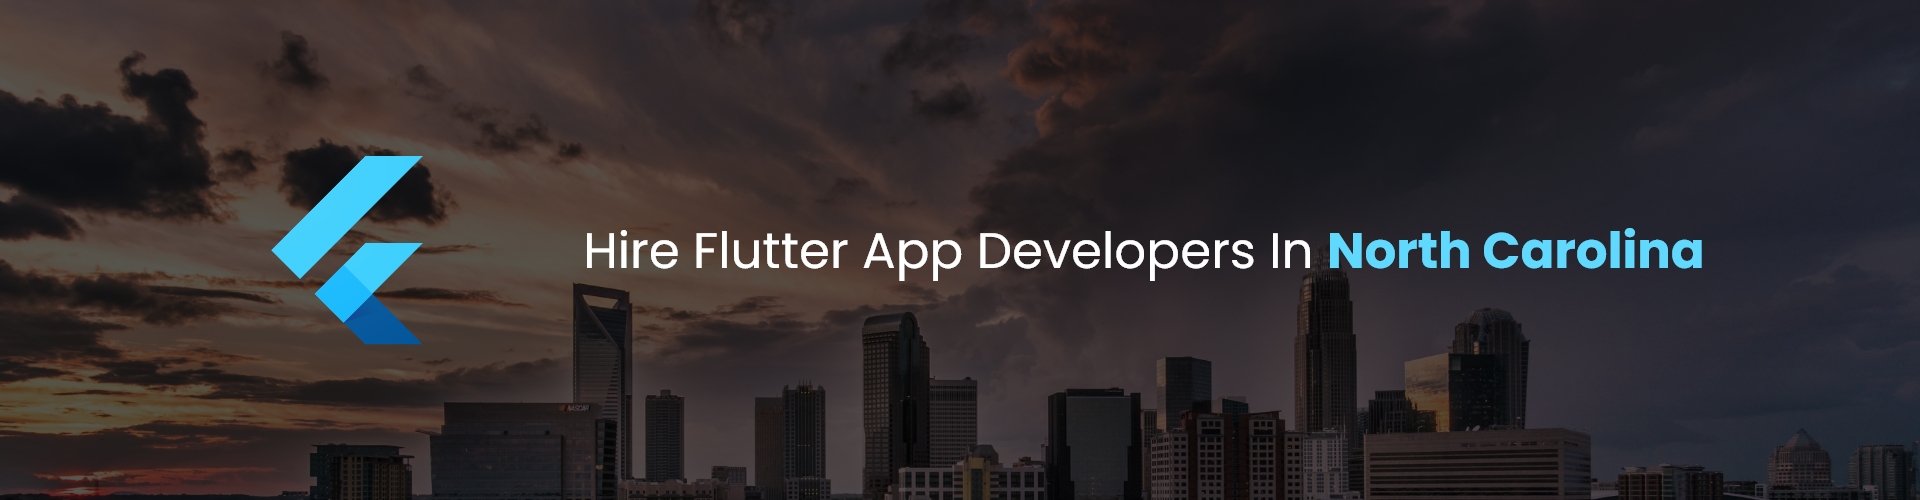 hire flutter app developers in north carolina